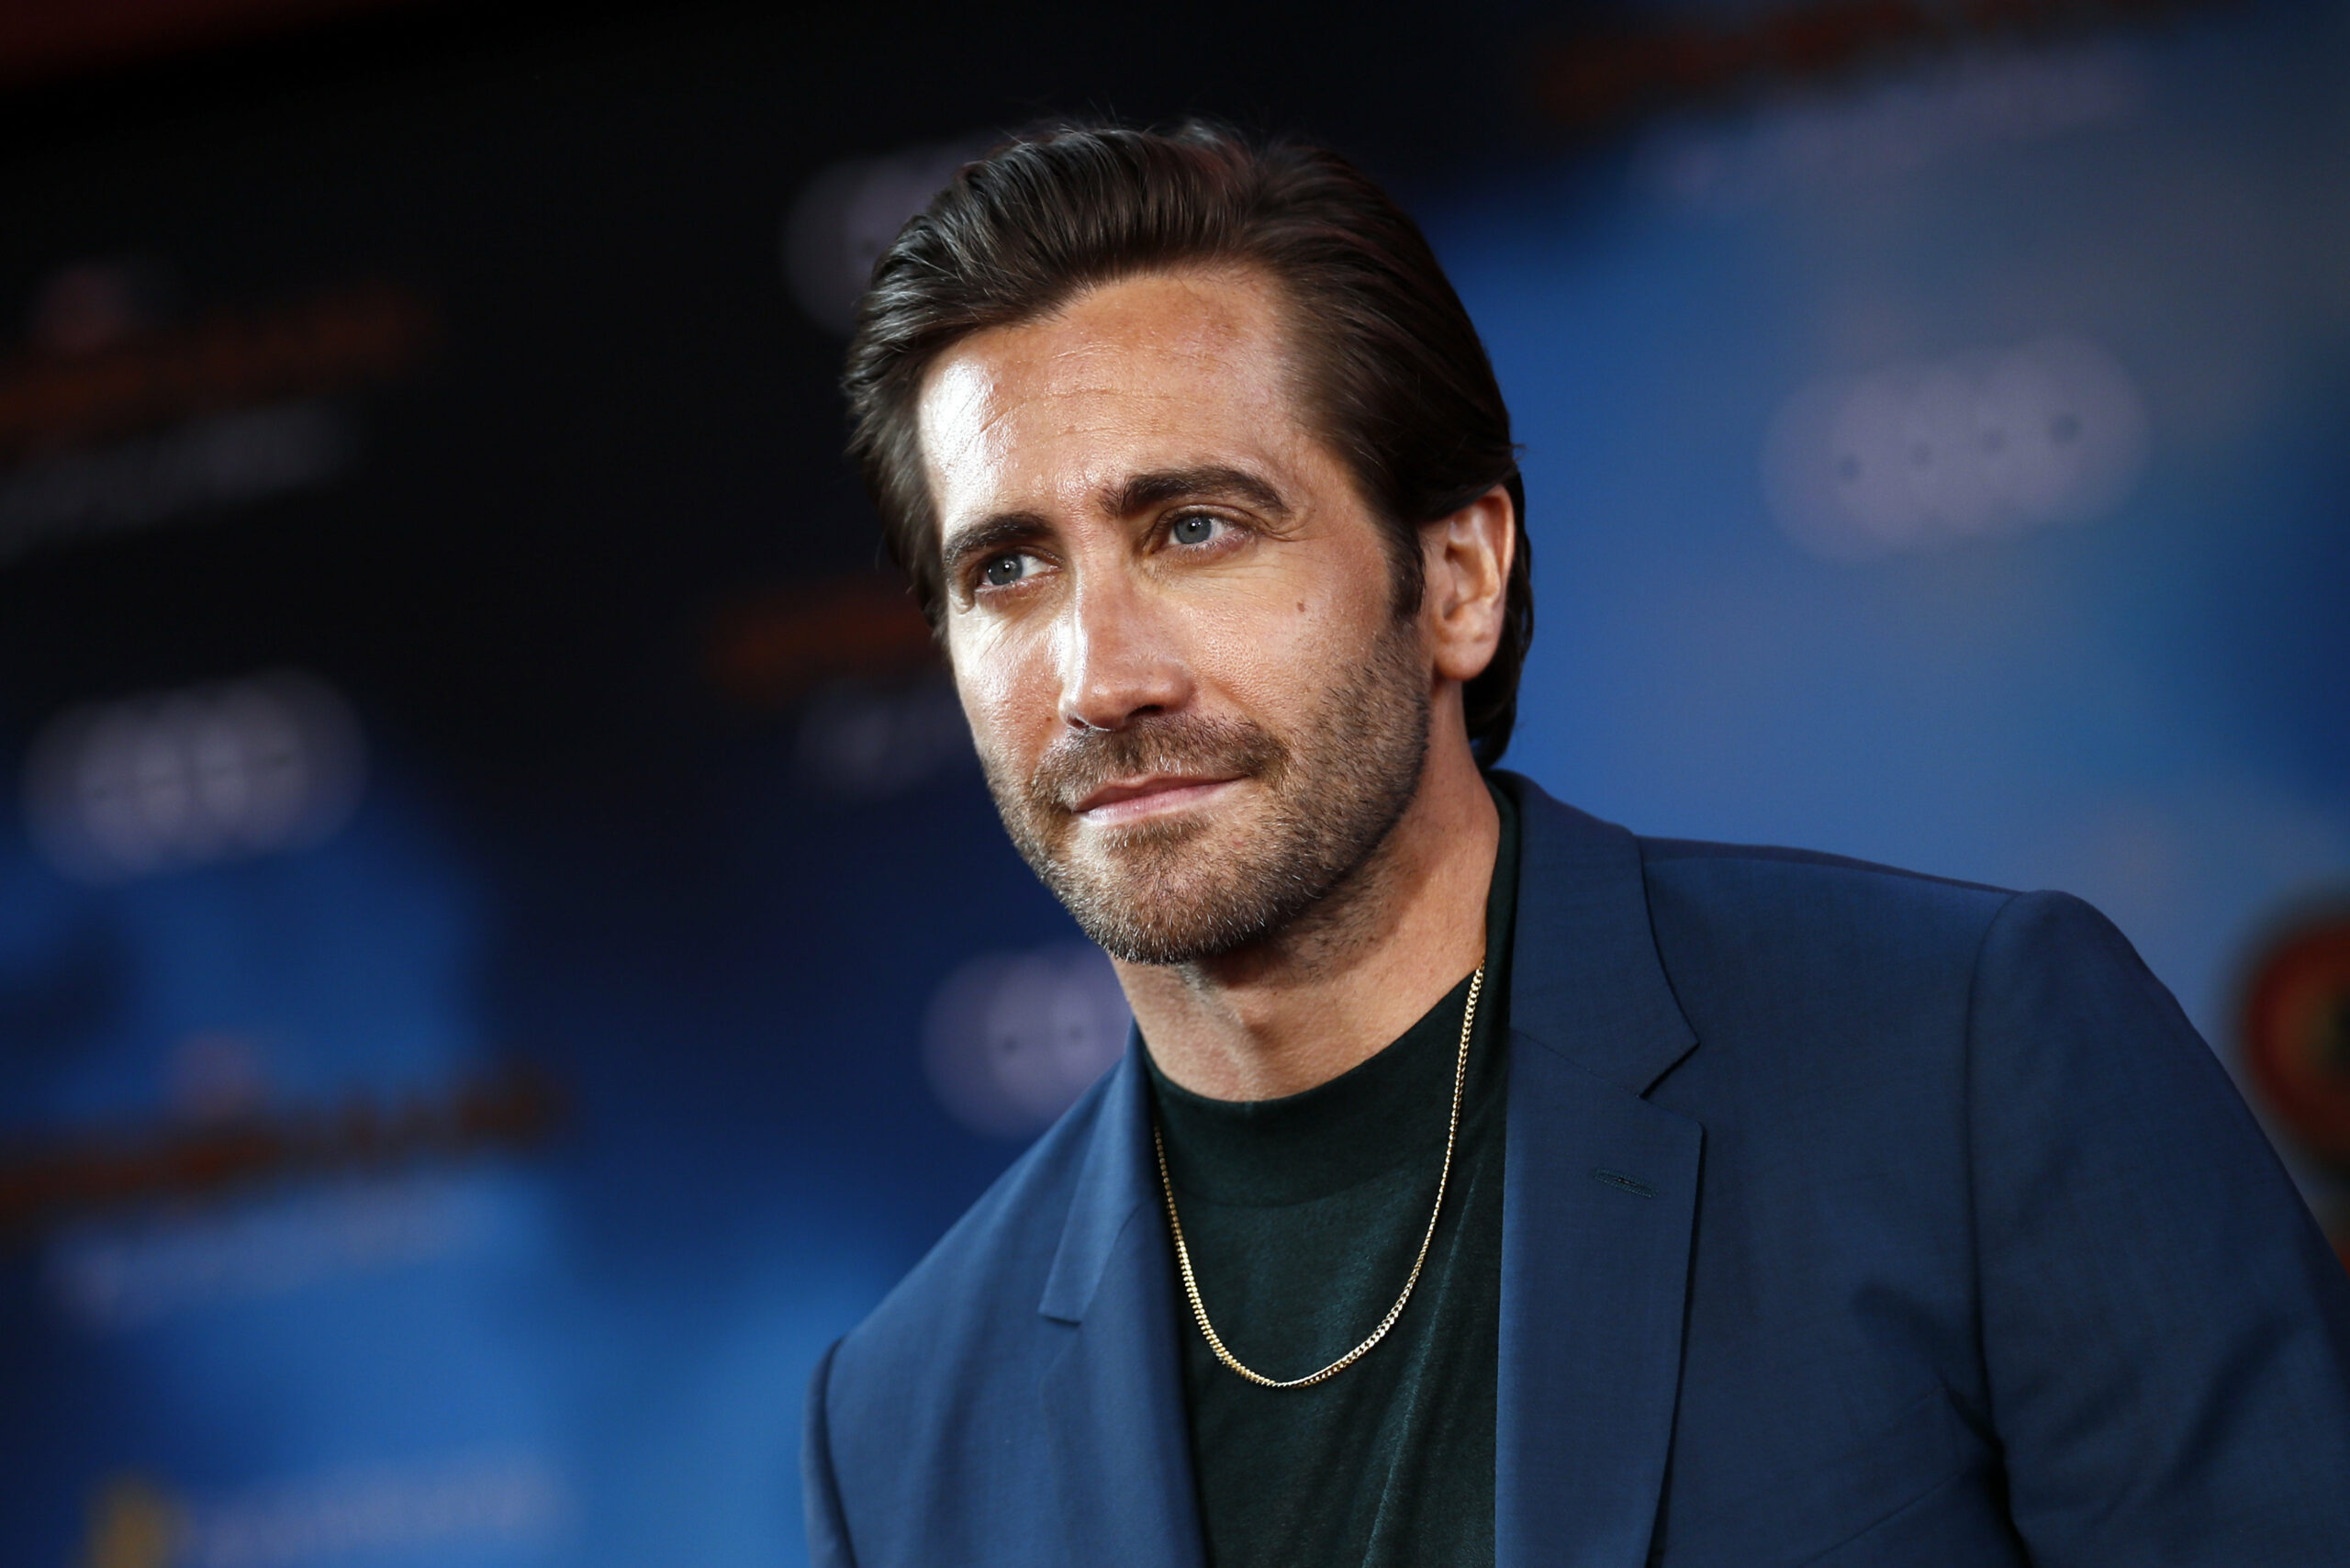 26 milliós filmből rúgták ki Jake Gyllenhaalt, miután kiakadt, ordibált és alsóra vetkőzött a forgatáson